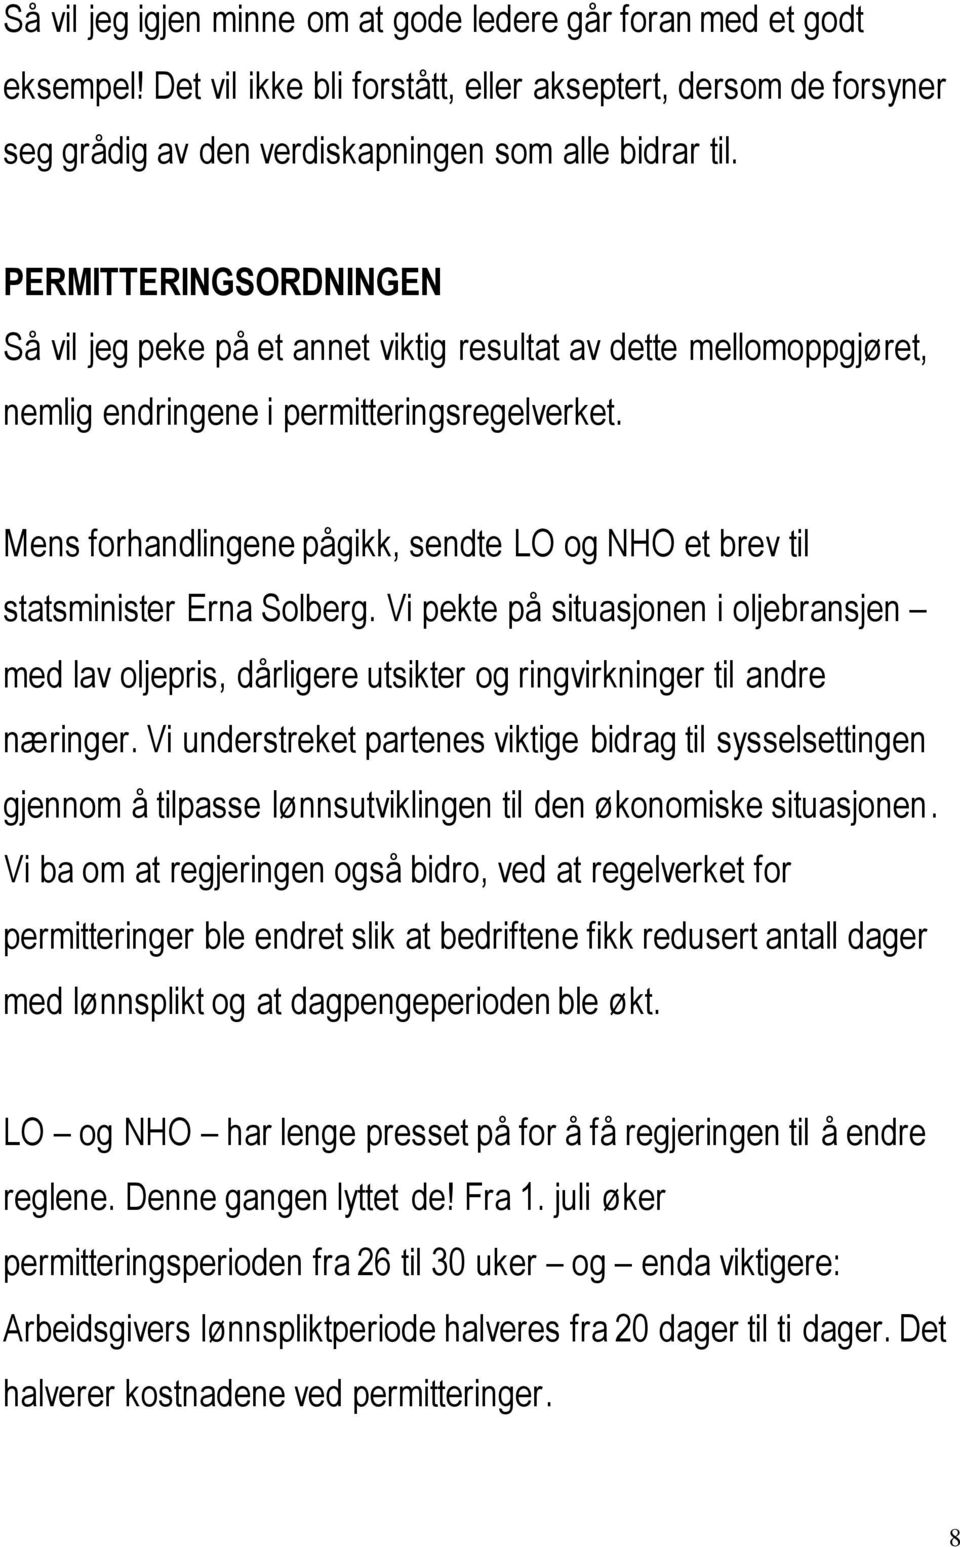 Mens forhandlingene pågikk, sendte LO og NHO et brev til statsminister Erna Solberg. Vi pekte på situasjonen i oljebransjen med lav oljepris, dårligere utsikter og ringvirkninger til andre næringer.